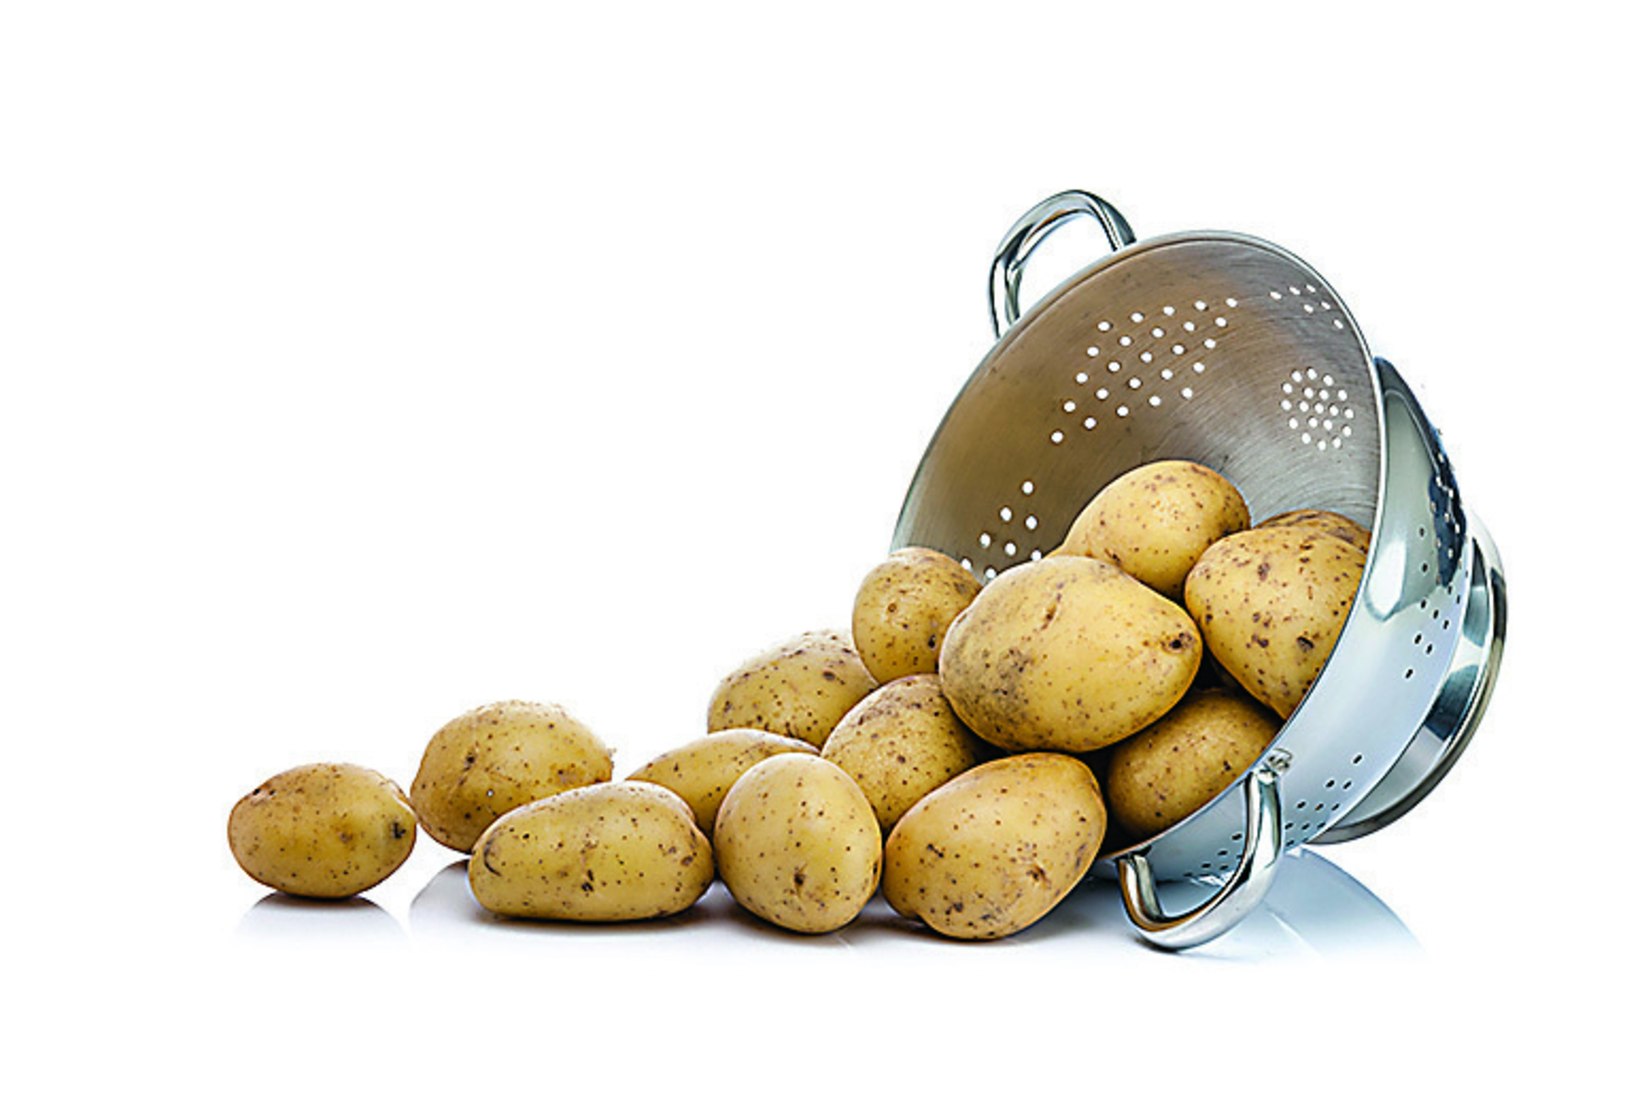 LEVINUD MÜÜT: kas kartul on tõesti ebatervislik?